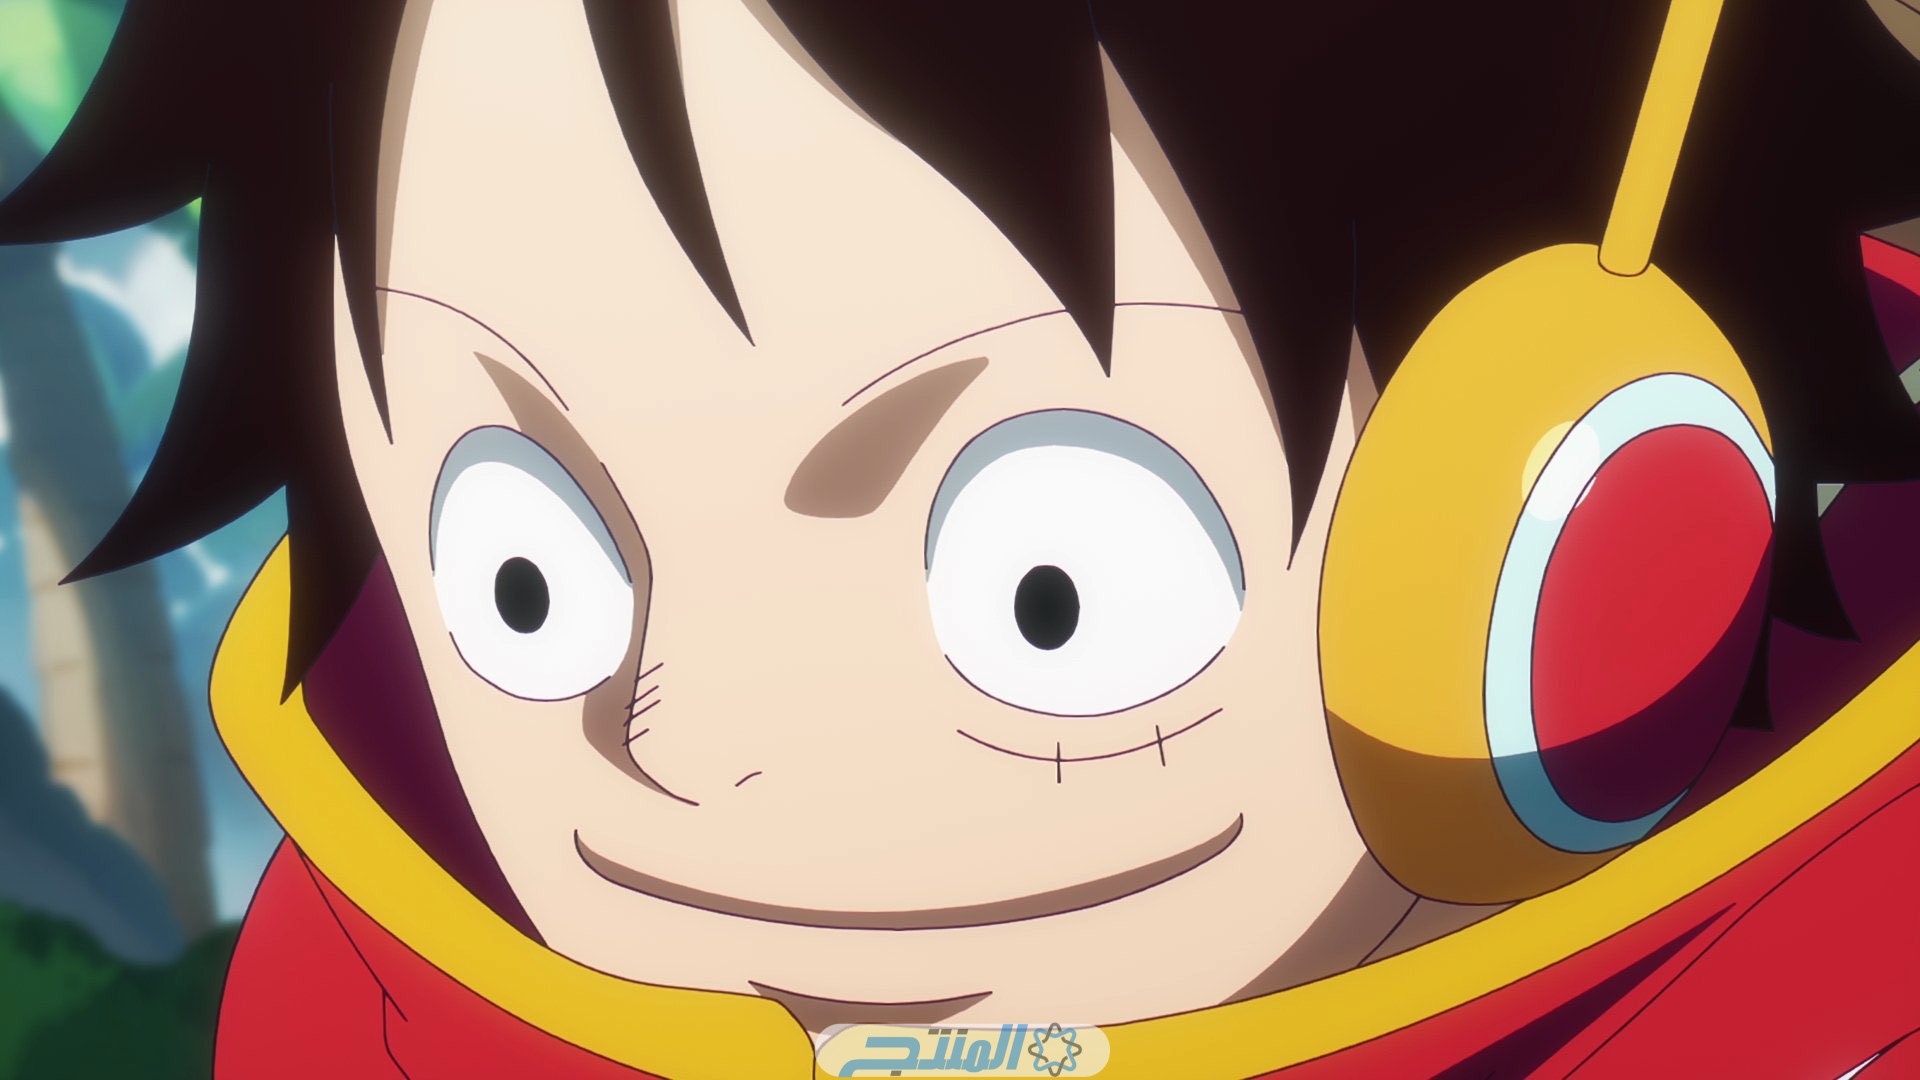 مشاهدة انمي One Piece الحلقة 1095 مترجم